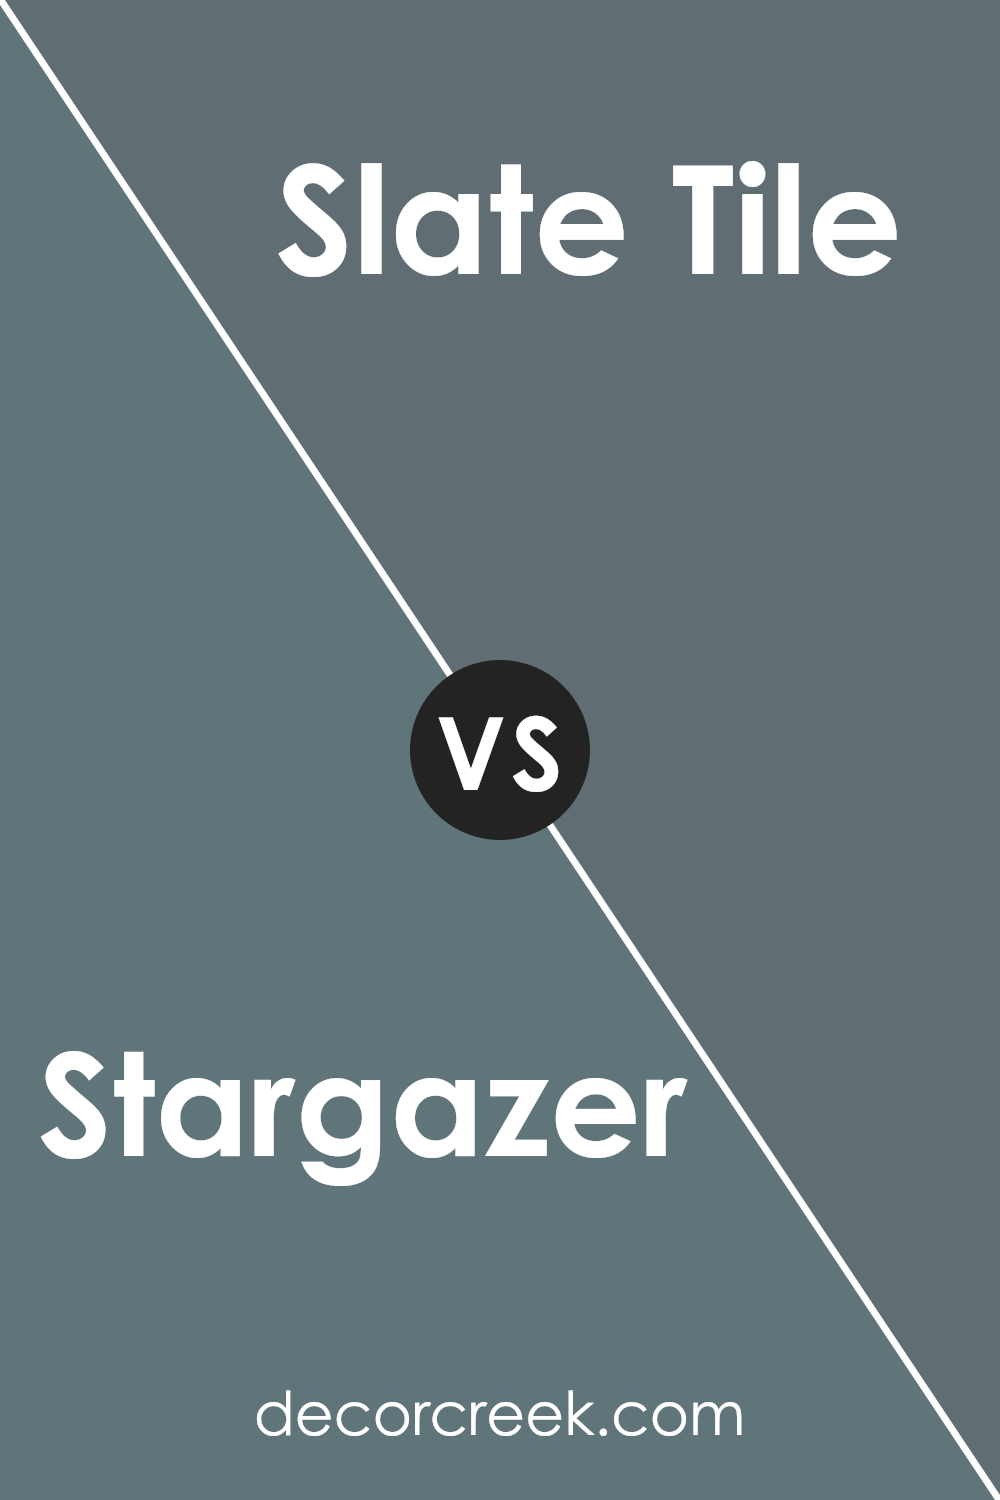 stargazer_sw_9635_vs_slate_tile_sw_7624